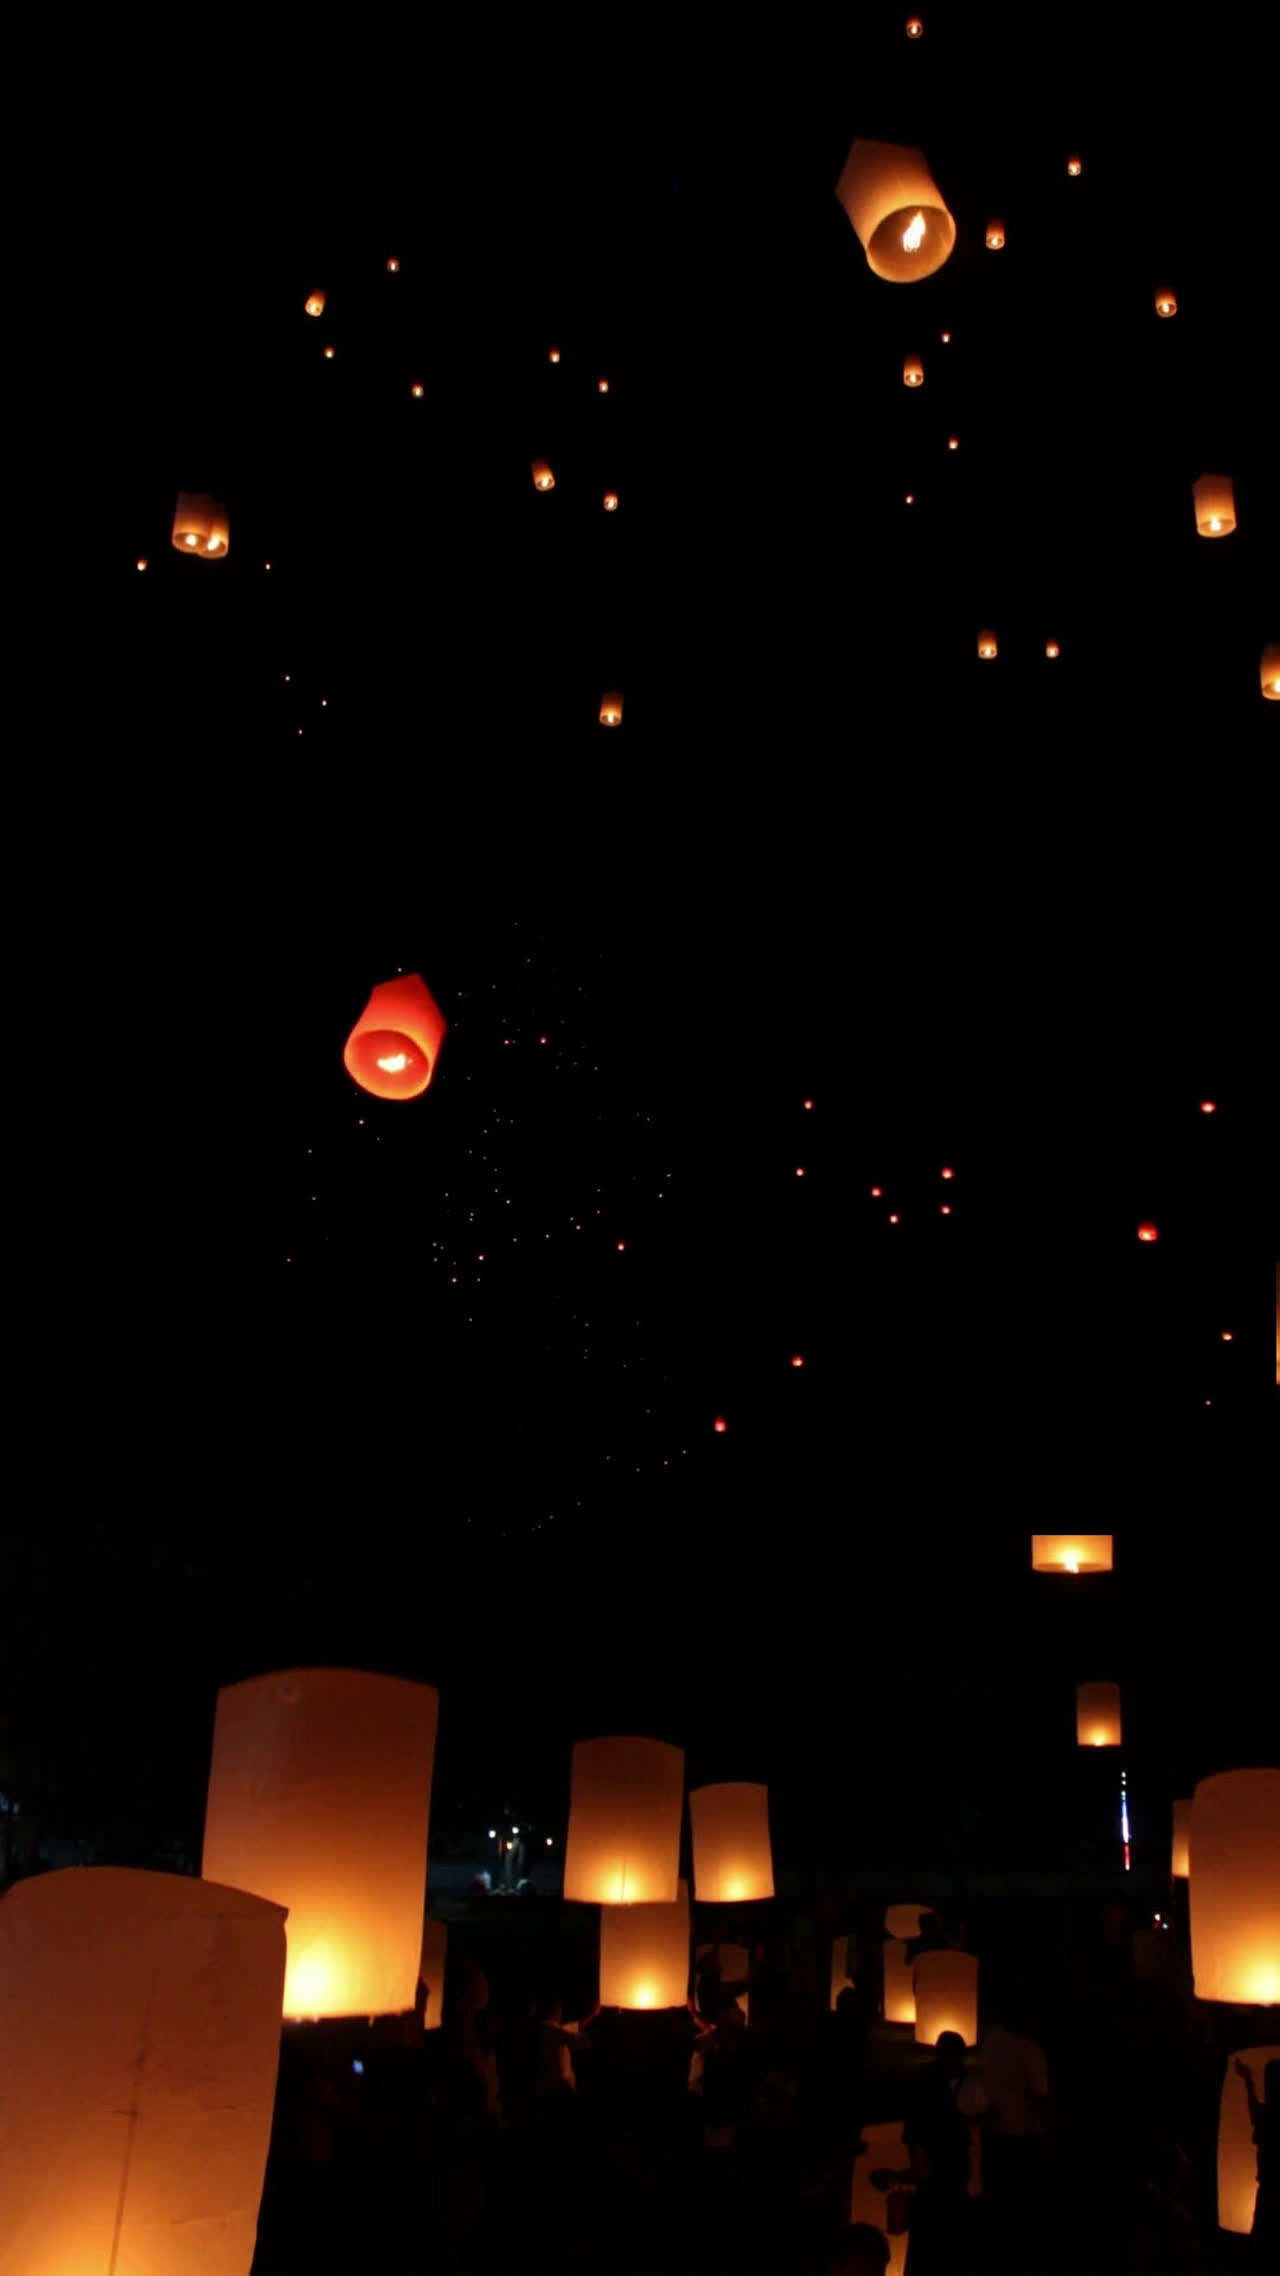 Lantern Festival: Yuanxiao jie, A festive day, Celebration. 1280x2280 HD Wallpaper.